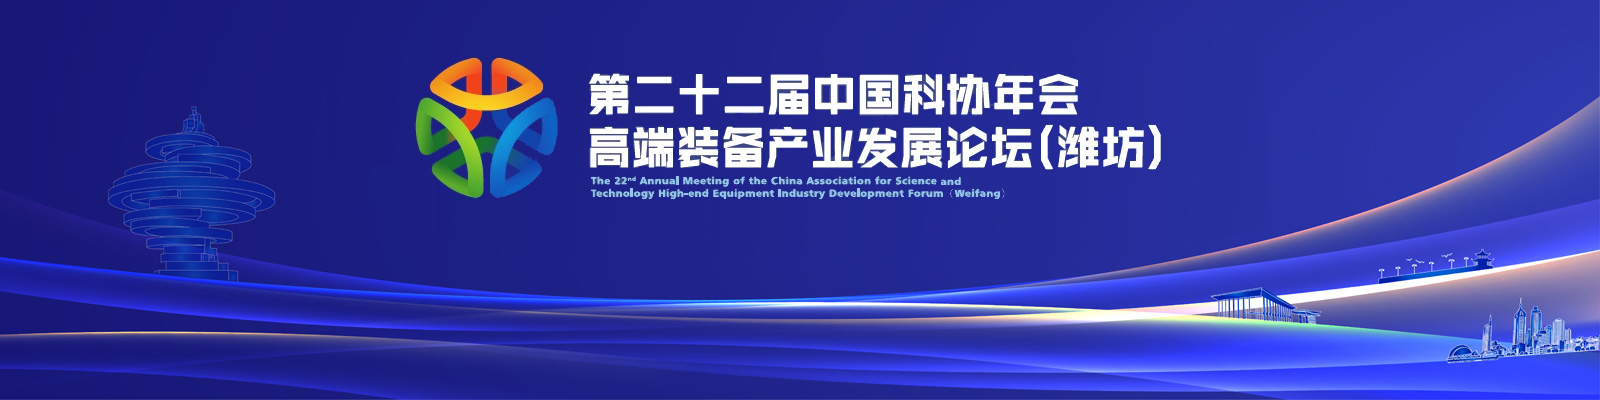 第二十二届中国科协年会高端装备产业发展论坛